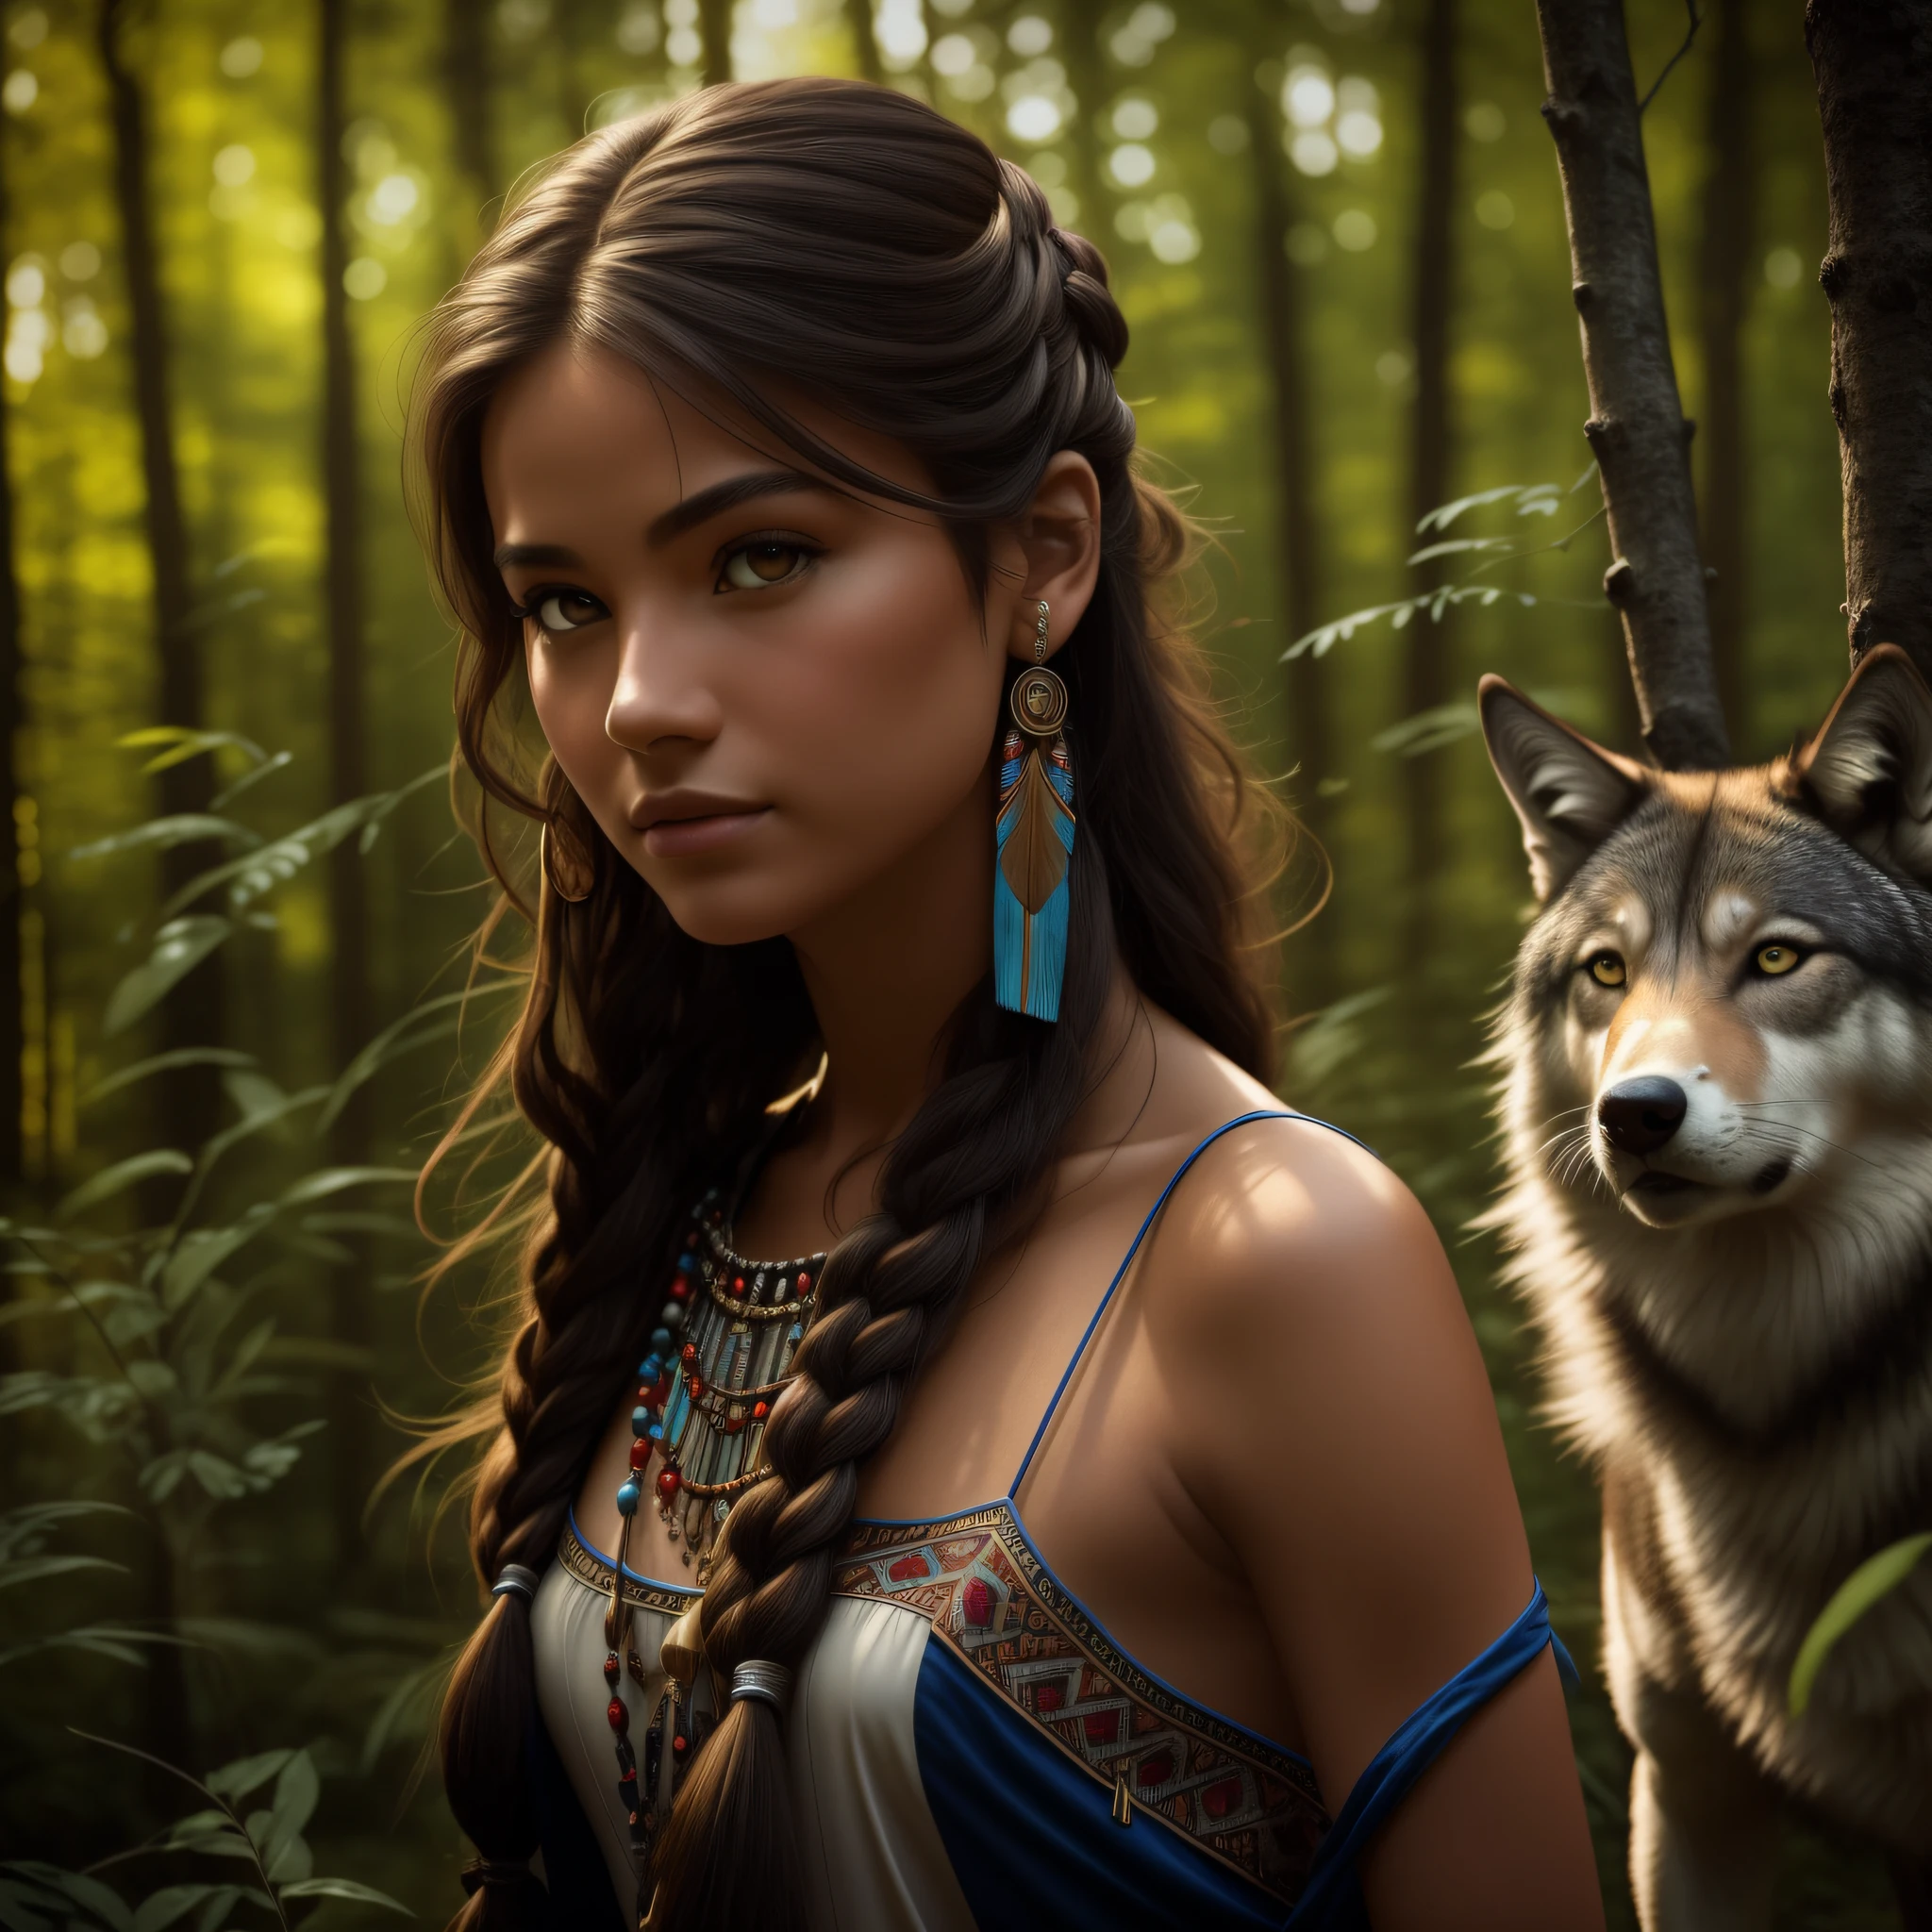 (最好的质量, 杰作: 1.1), (现实主义: 1.4),(杰作, 实际的: 1.4), (极致精准: 1.2); (正面: 1.3), 实际的 portrait of a Native American girl with indigenous adornments with her ultra 实际的 pet wolf in the forest, 部落服饰, 超长头发, 裸露的肩膀, 夜空, 星系辉光, 海洋, 水, 头部倾斜, 风, 云, 自然光, 户外的, 独自的, 休息, 电影灯光, 超高分辨率, 8K 超高清, 薄膜珠粒,  完美的解剖结构, Delicate and 精美的 skin, 最好的阴影, 精美的, 生的, 高分辨率, 女猎手, 夜晚, 满月亮度.